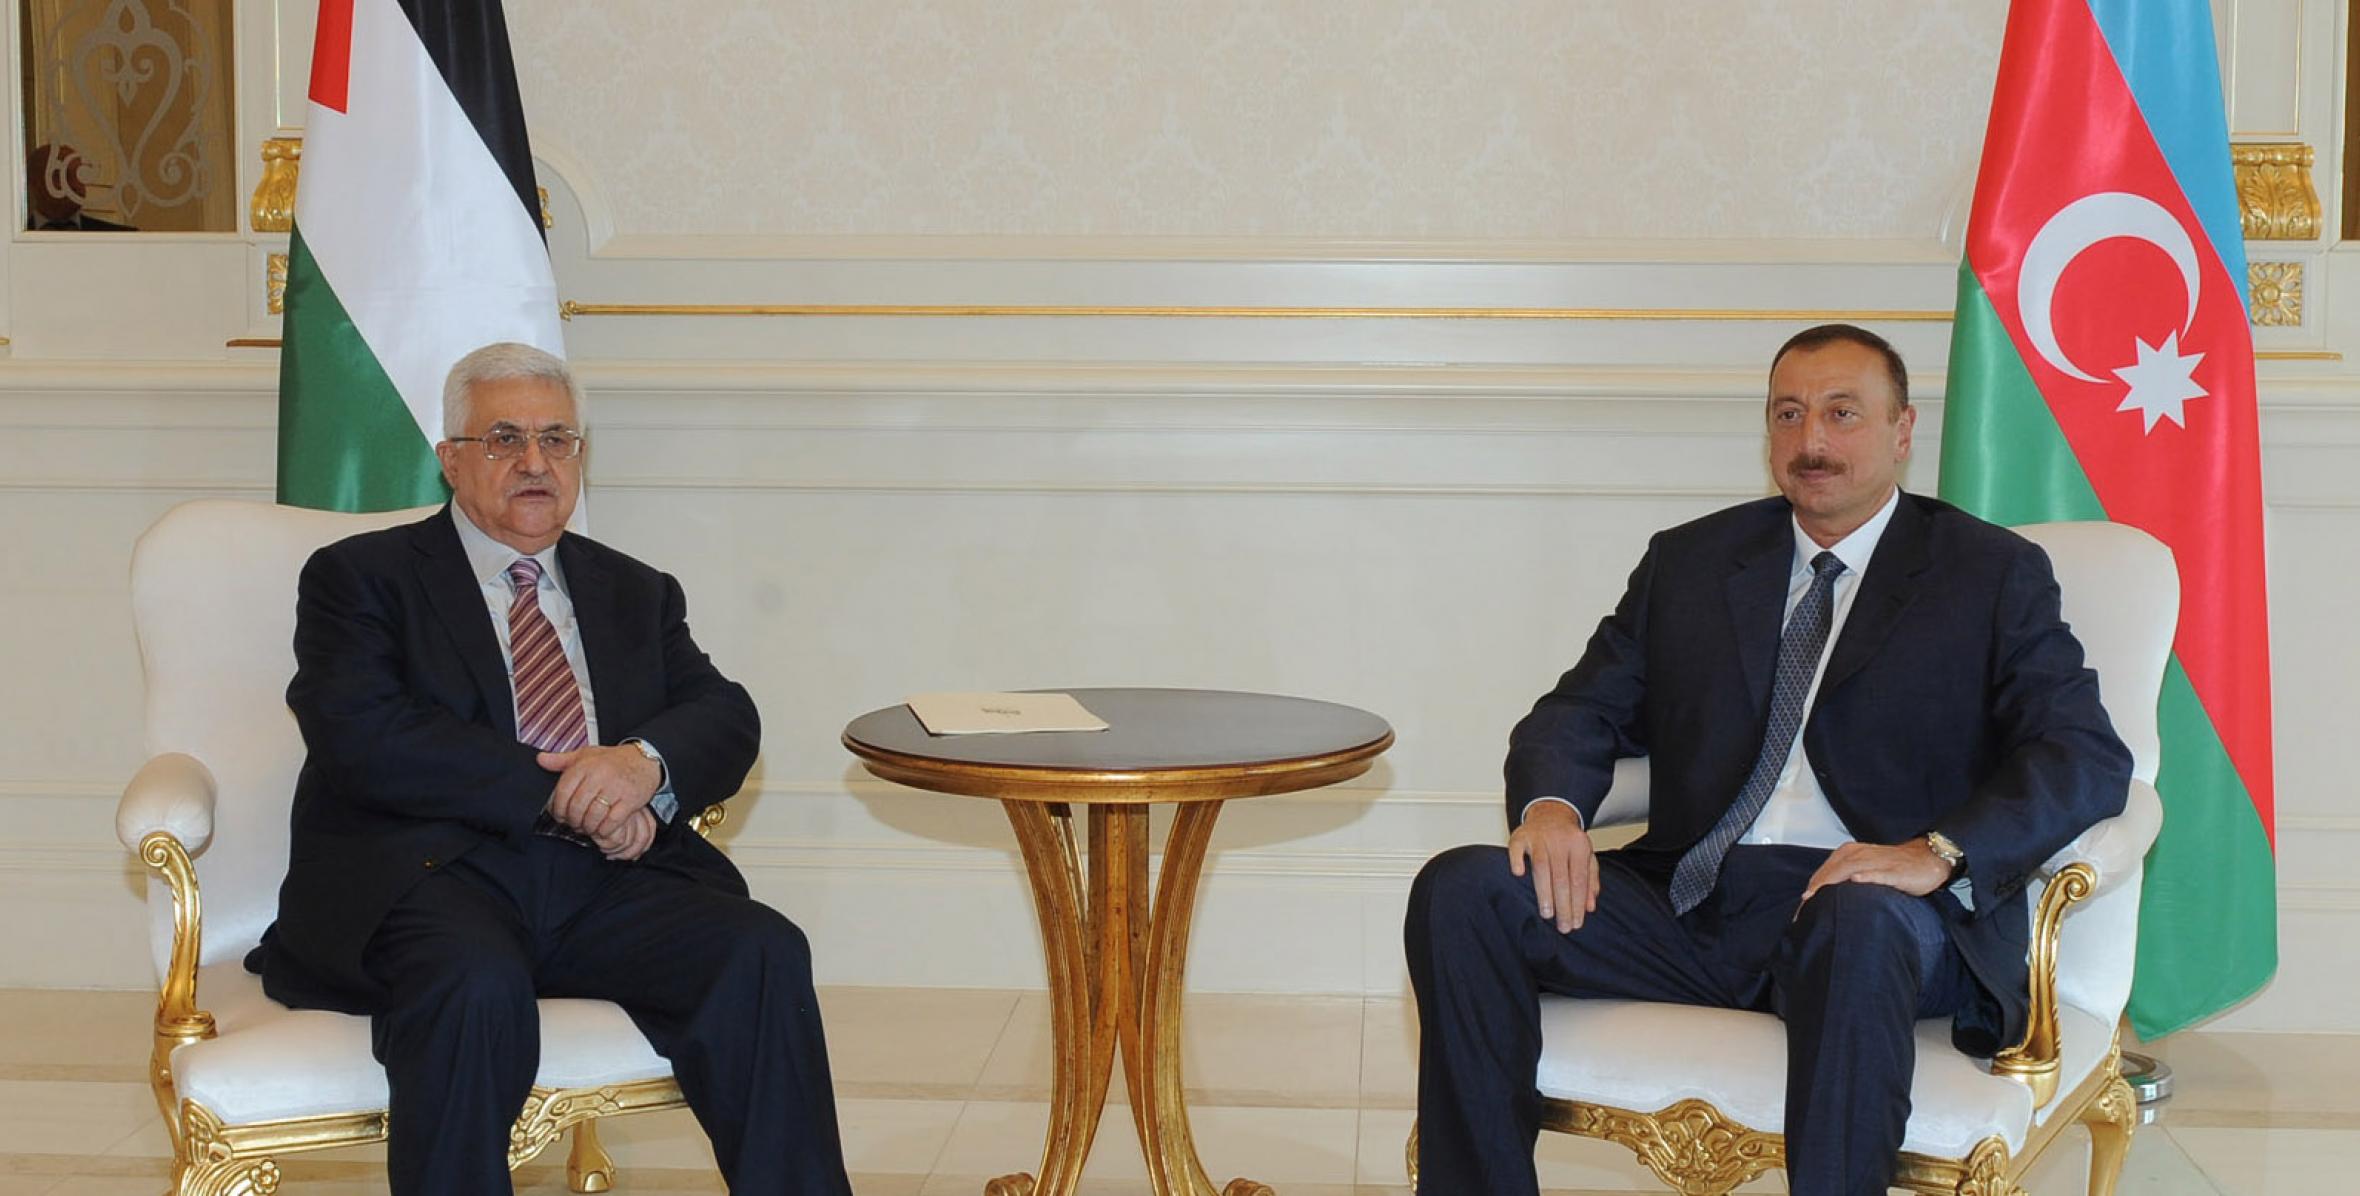 Состоялась встреча Ильхама Алиева и Президента Палестины Махмуда Аббаса один на один